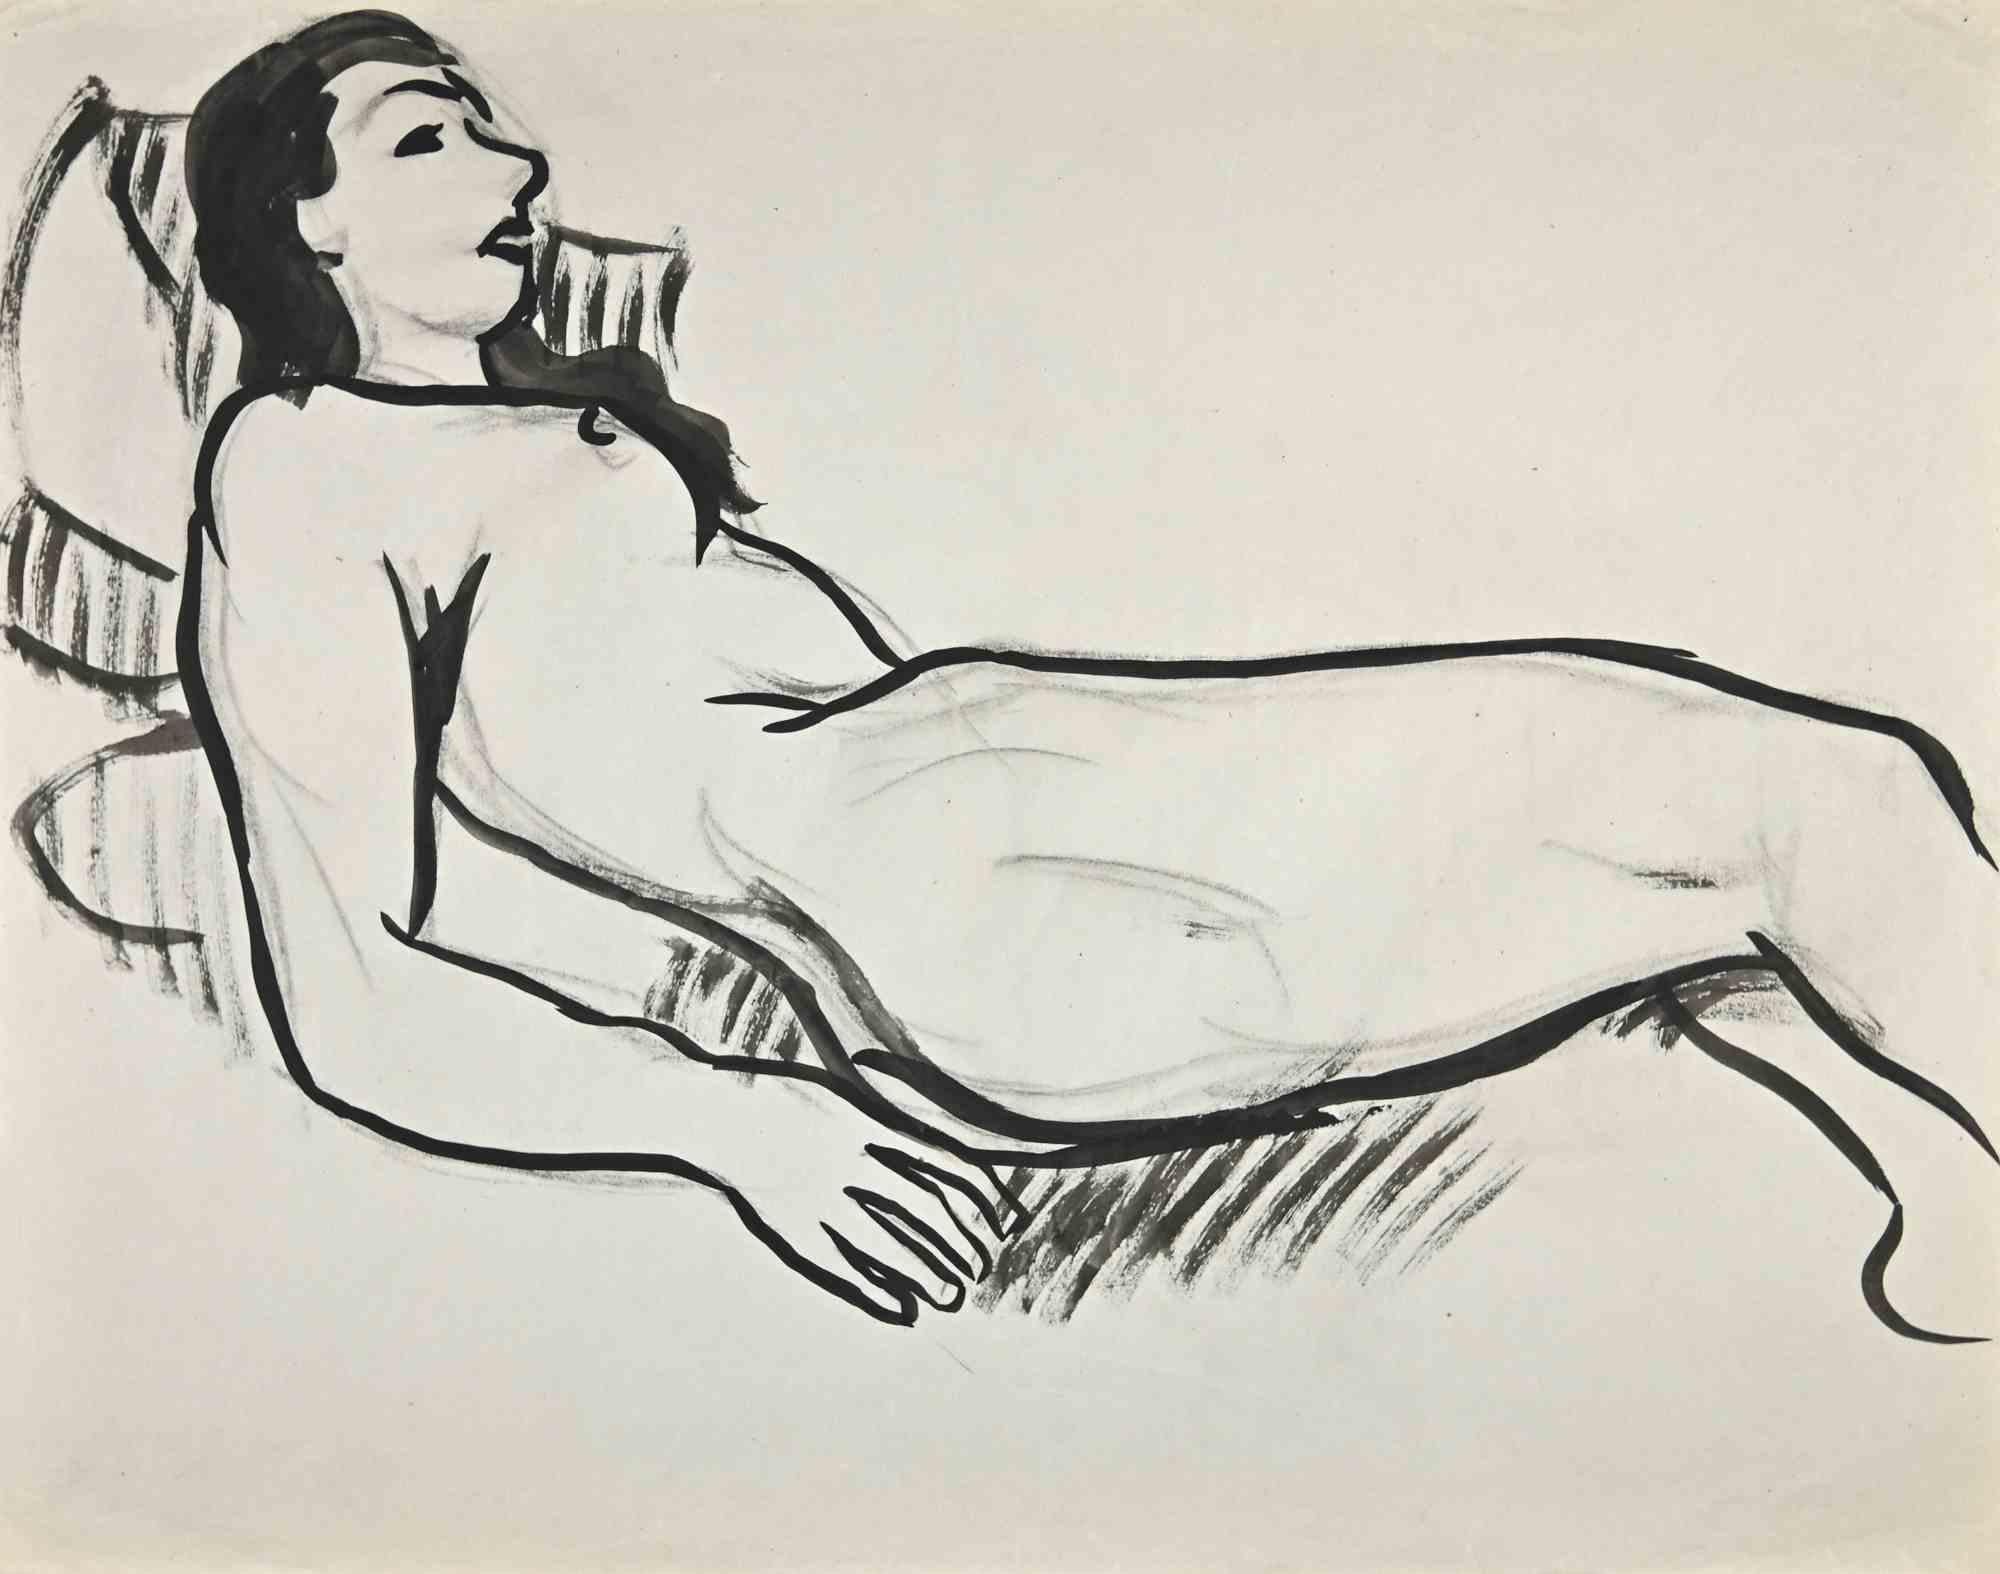 Reclined Nude ist eine Aquarellzeichnung, die Mitte des 20. Jahrhunderts von Jean Delpech (1916-1988) geschaffen wurde. 

Guter Zustand mit kleinen Faltungen und Schnitten.

Jean-Raymond Delpech (1988-1916) ist ein französischer Maler, Graveur und